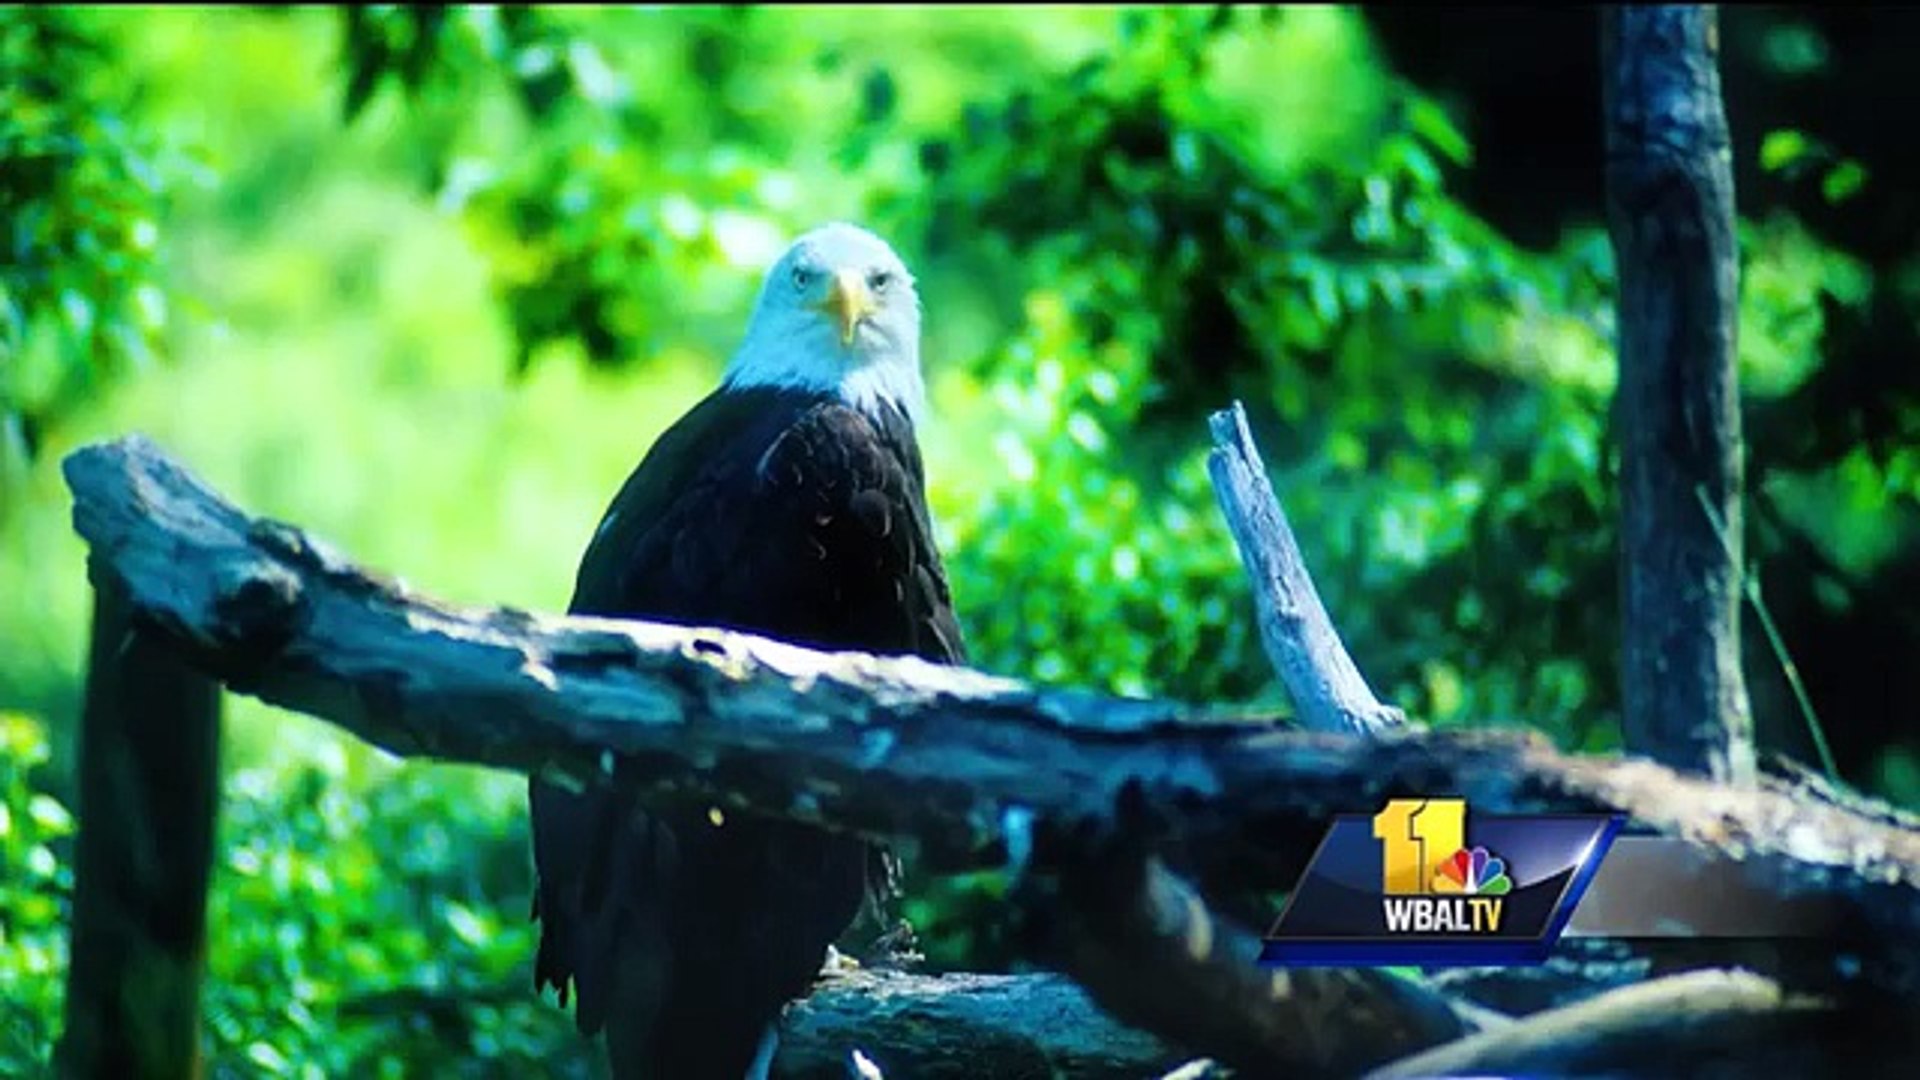 $10K reward offered after cluster of bald eagles discovered dead